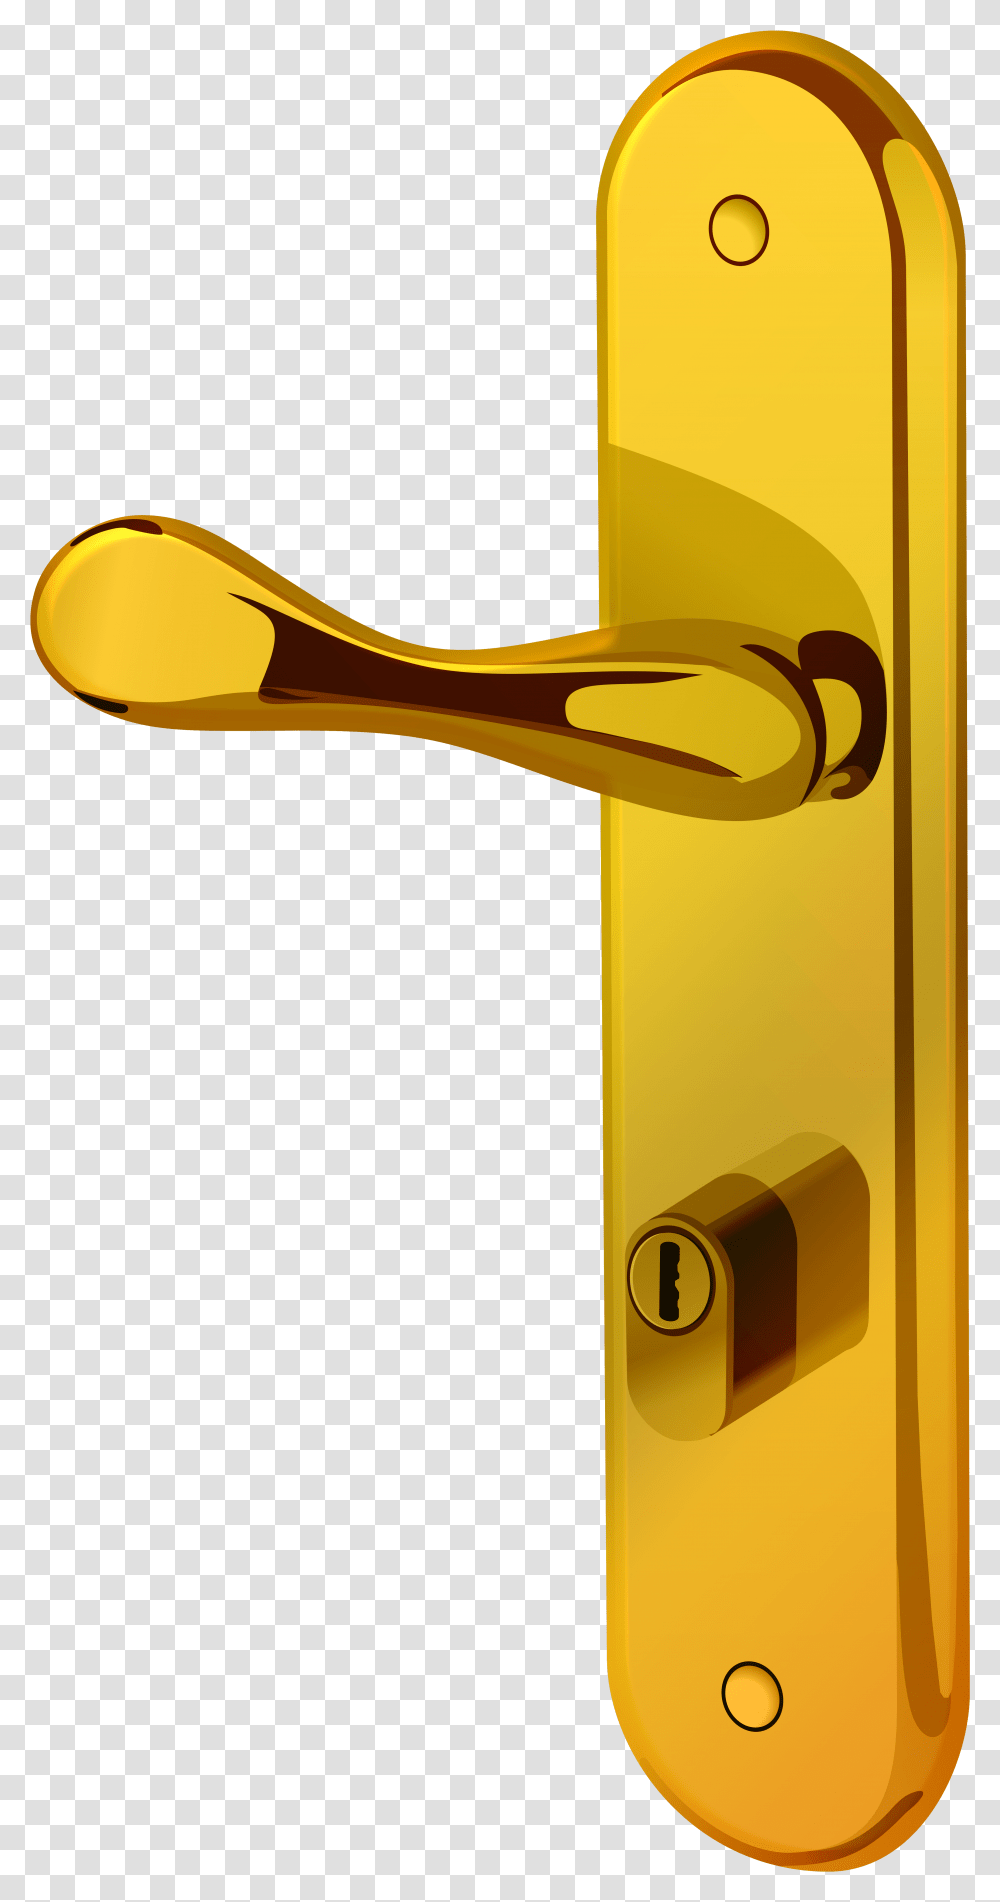 Gold Door Handle Clip Art Door Handle Clipart, Cutlery, Hammer, Tool, Spoon Transparent Png